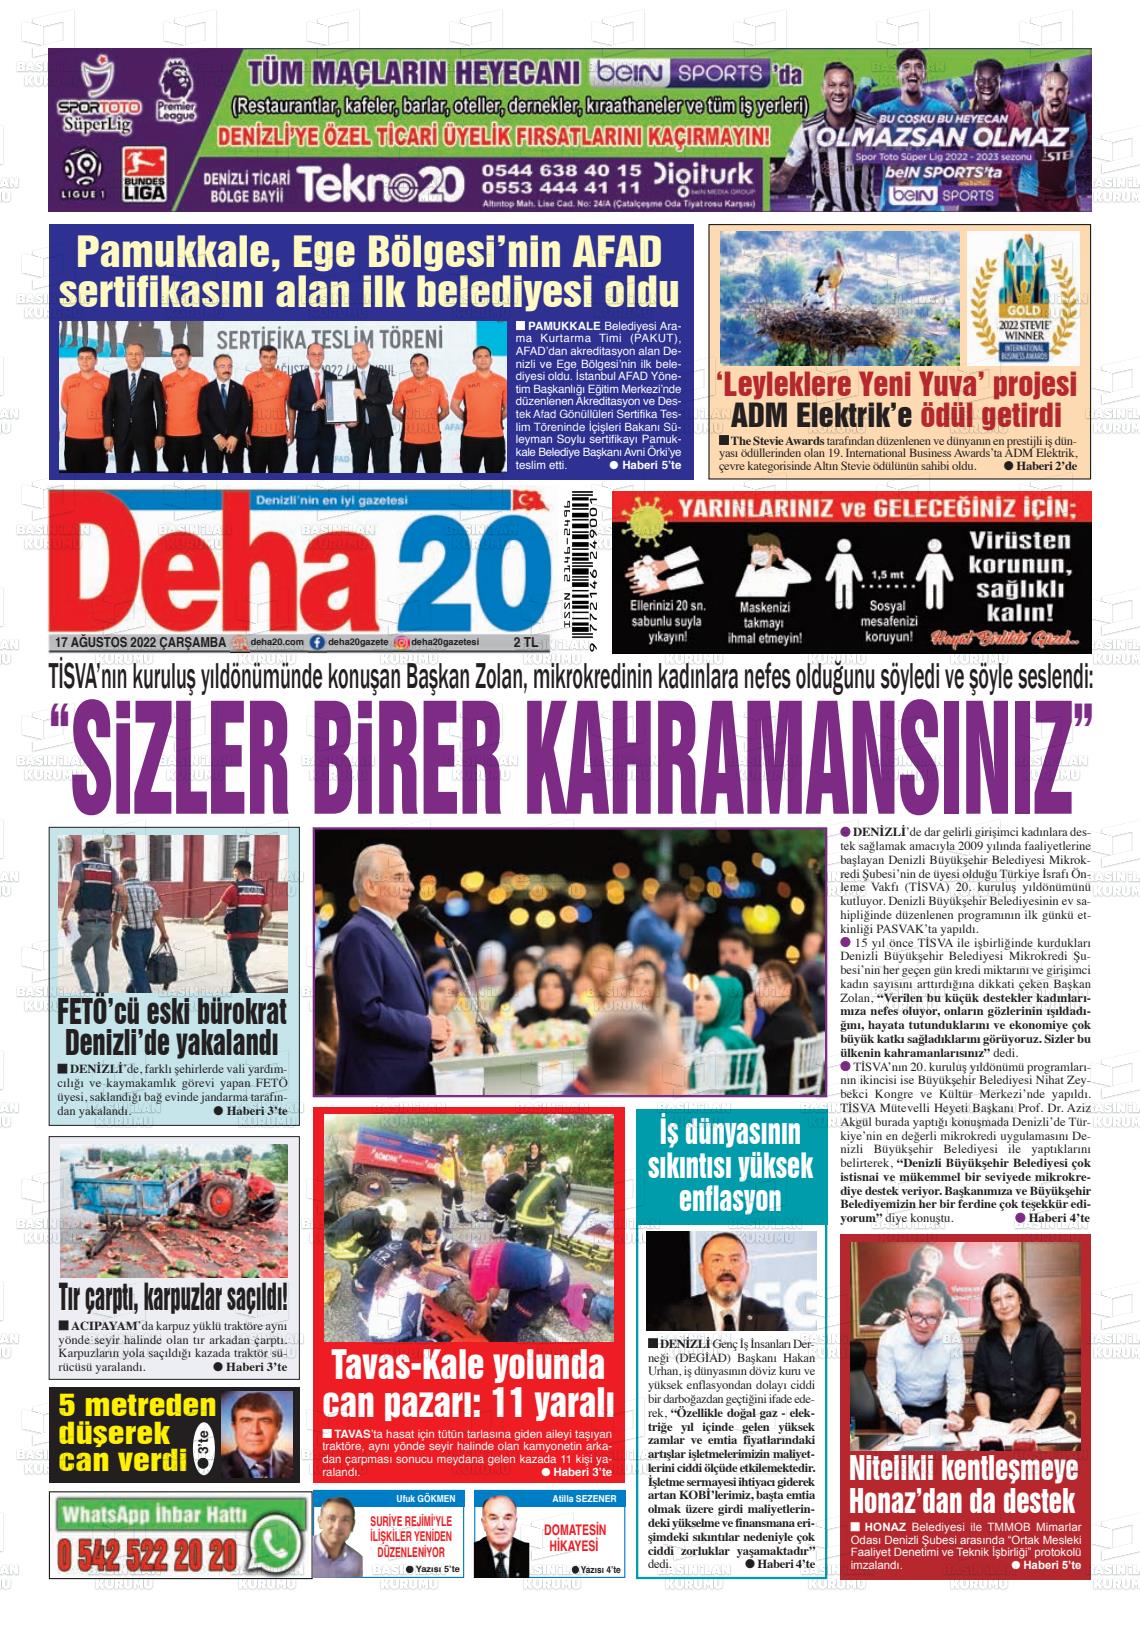 17 Ağustos 2022 Deha 20 Gazete Manşeti